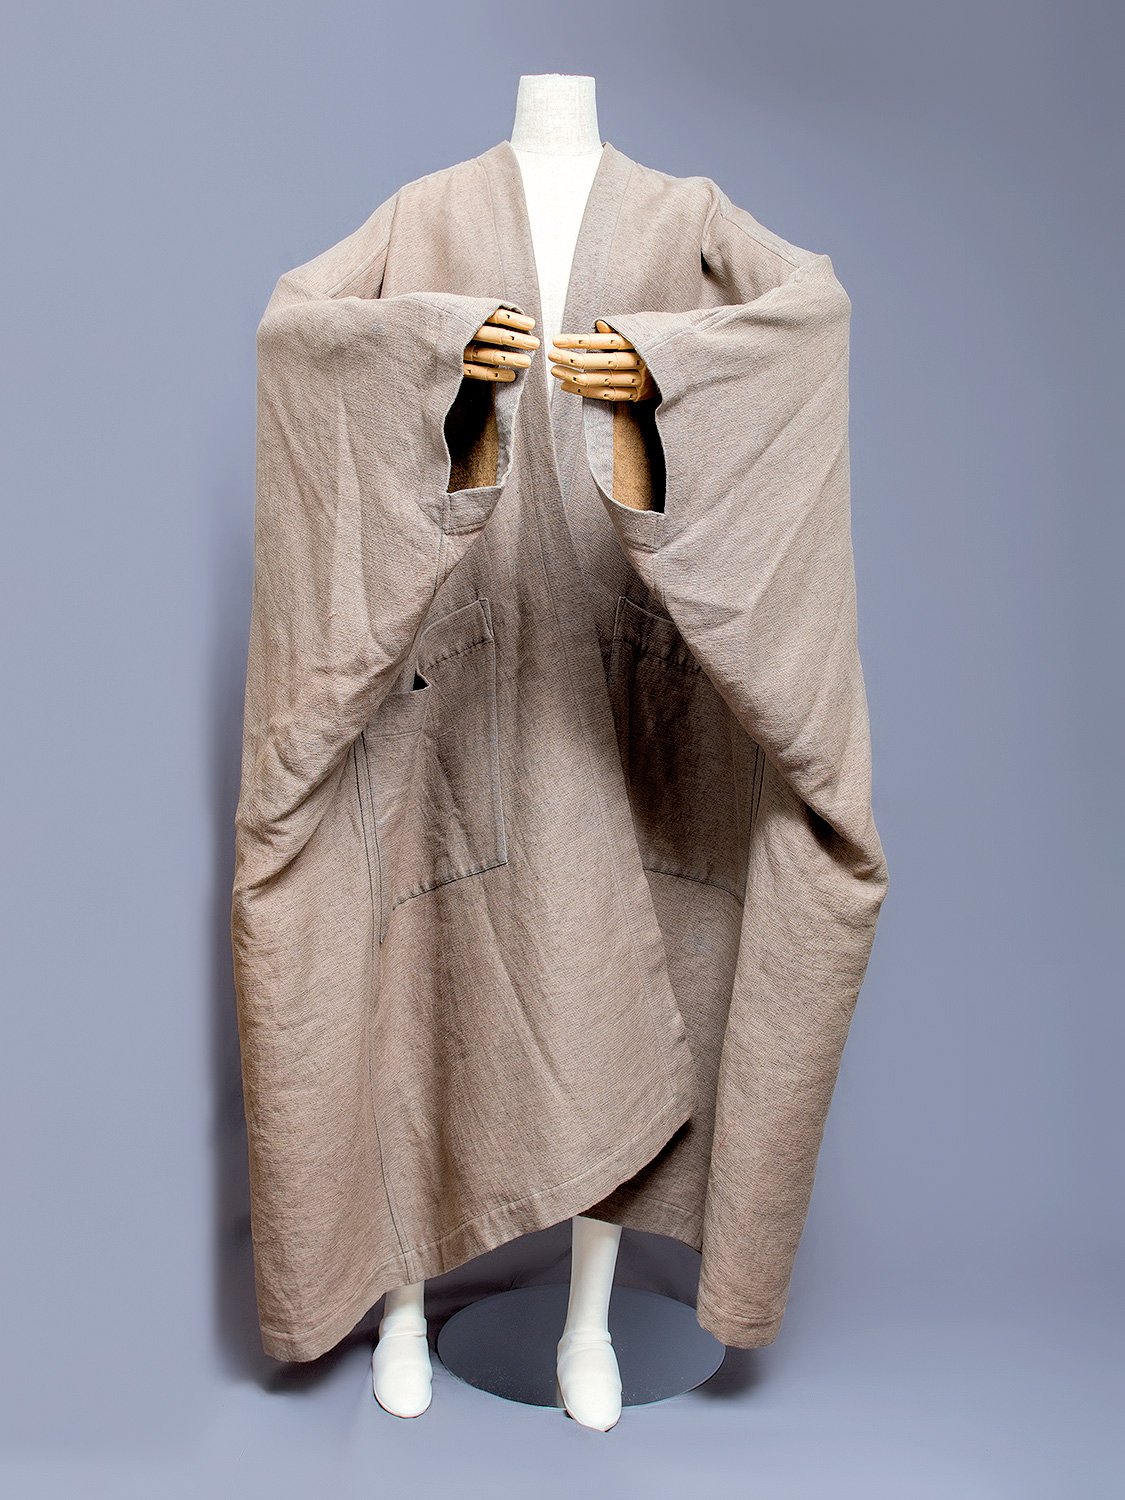 Issey Miyake Oversized Kimono Coat, 1980s | Japanese Fashion Archive